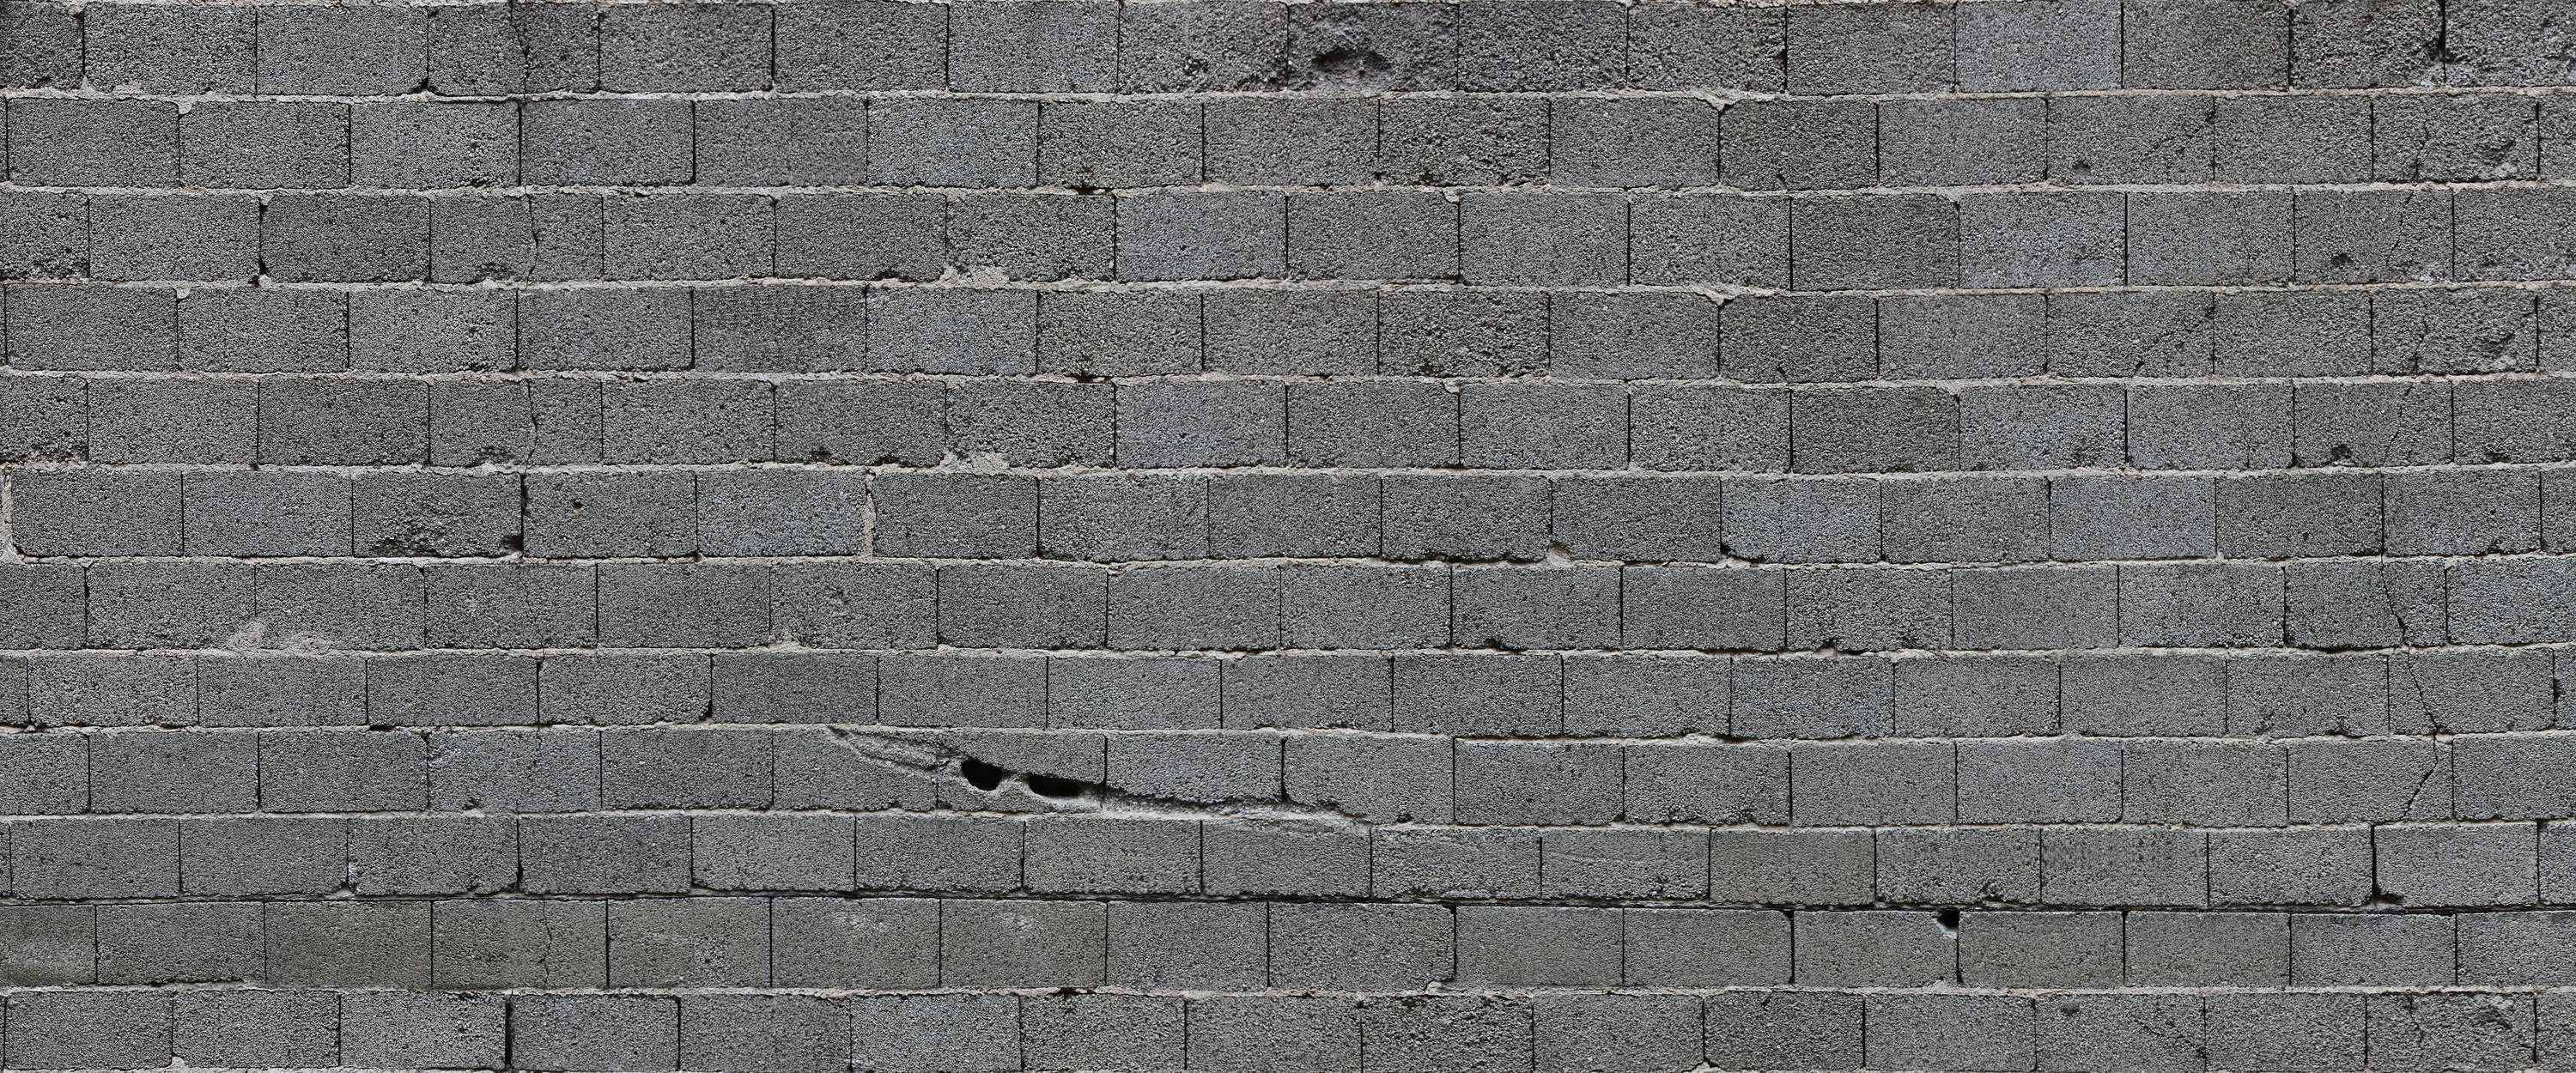             Muurschildering grijze stenen muur met betonblokken
        